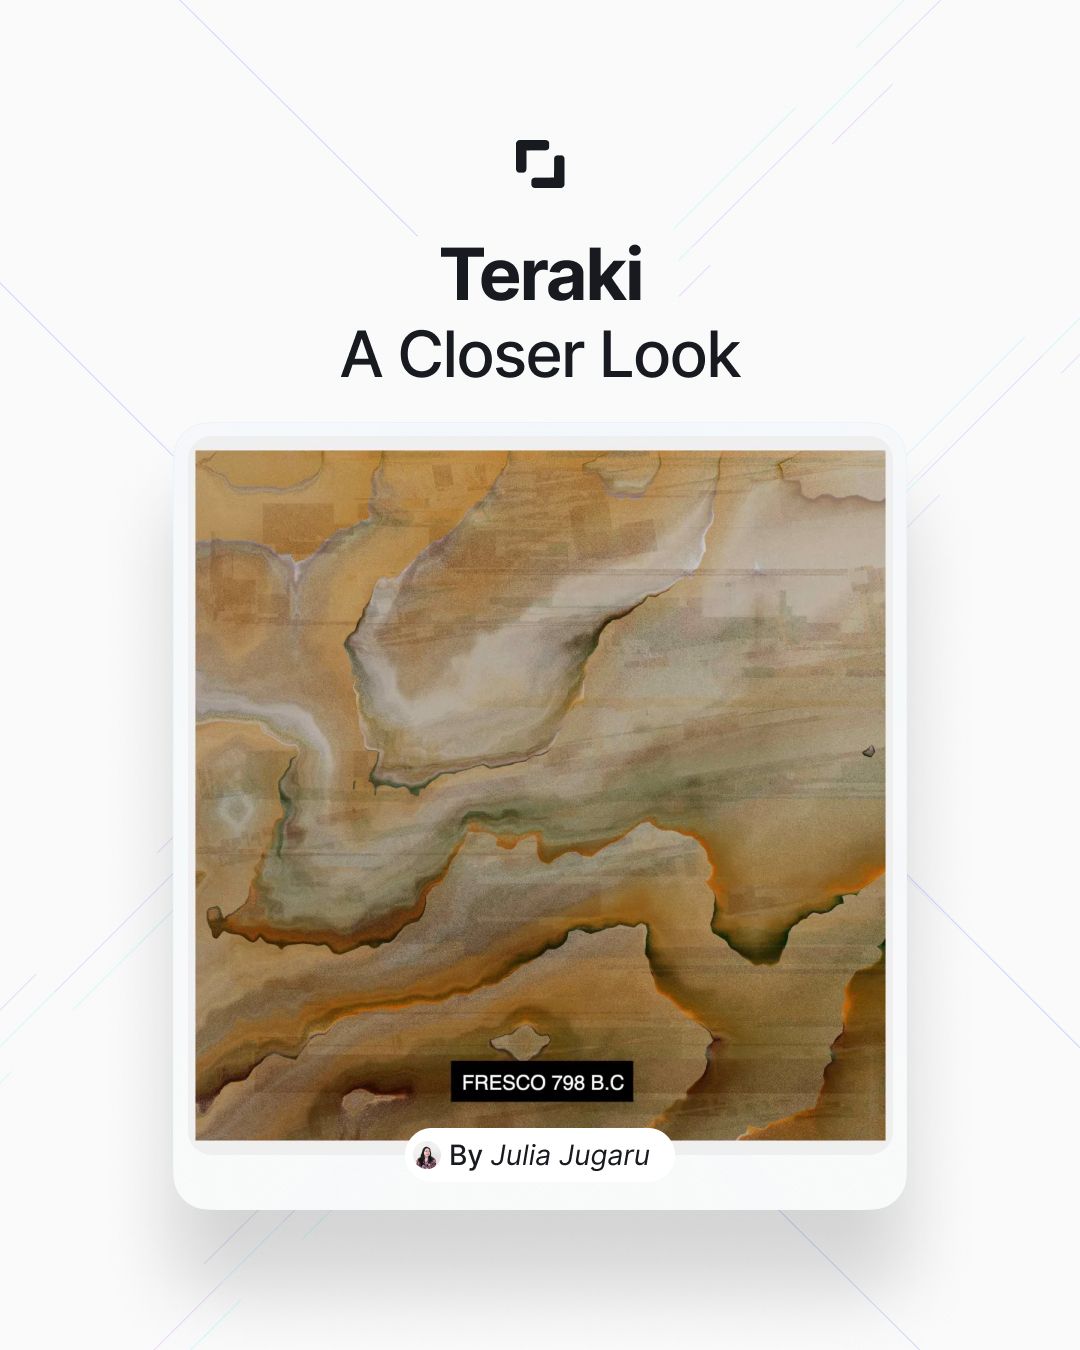 Teraki: A closer look